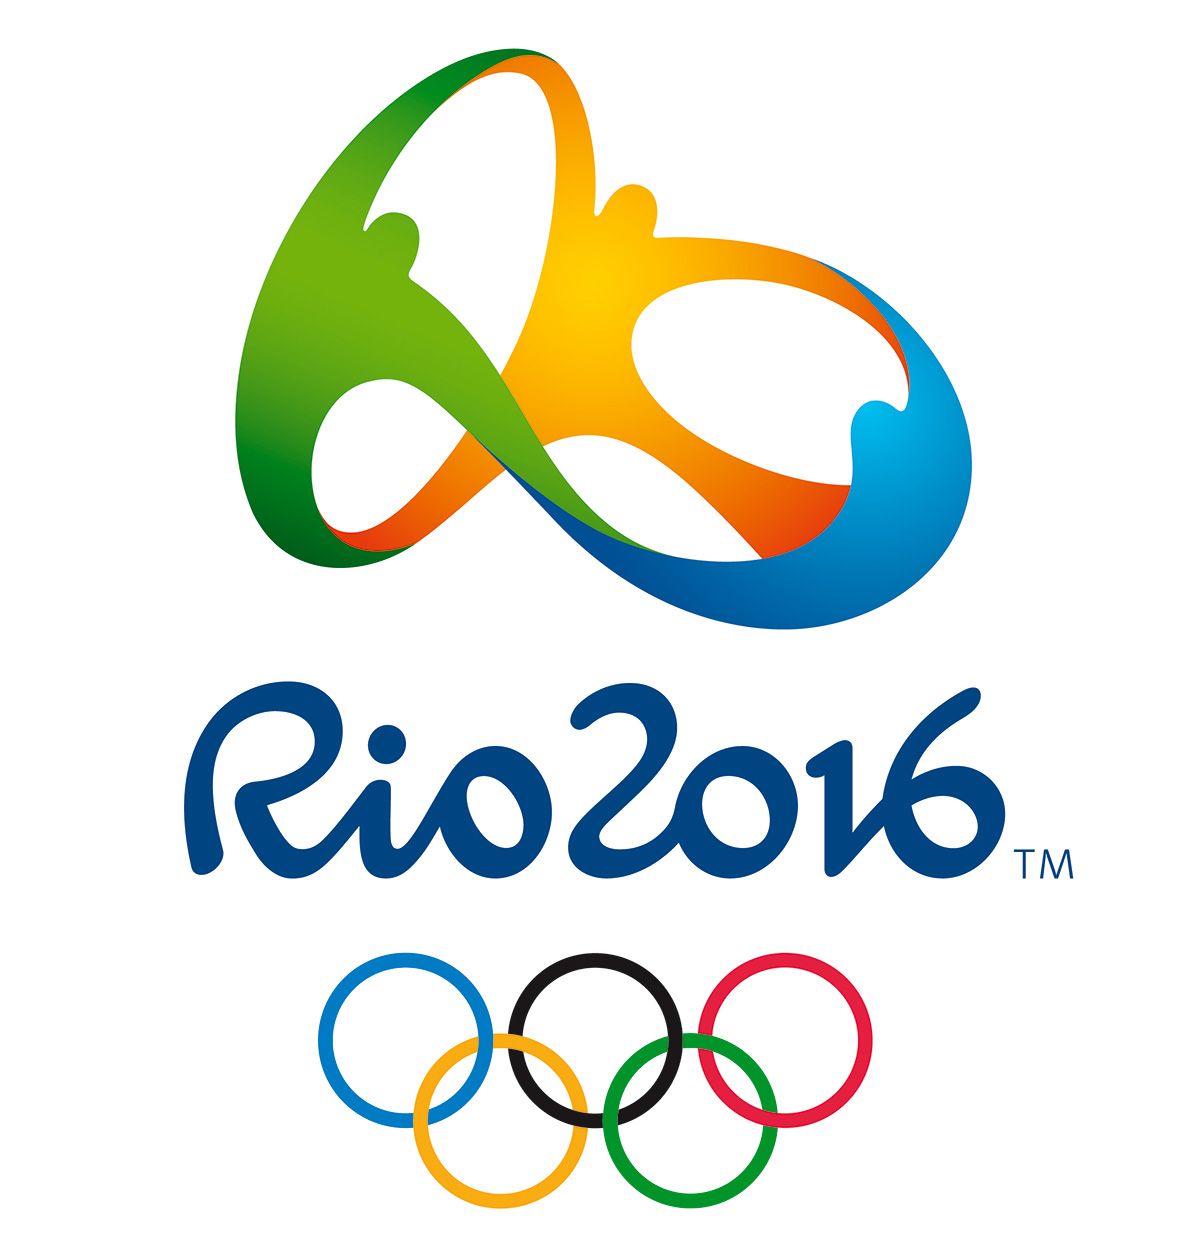 олимпийские игры в рио де жанейро 2016